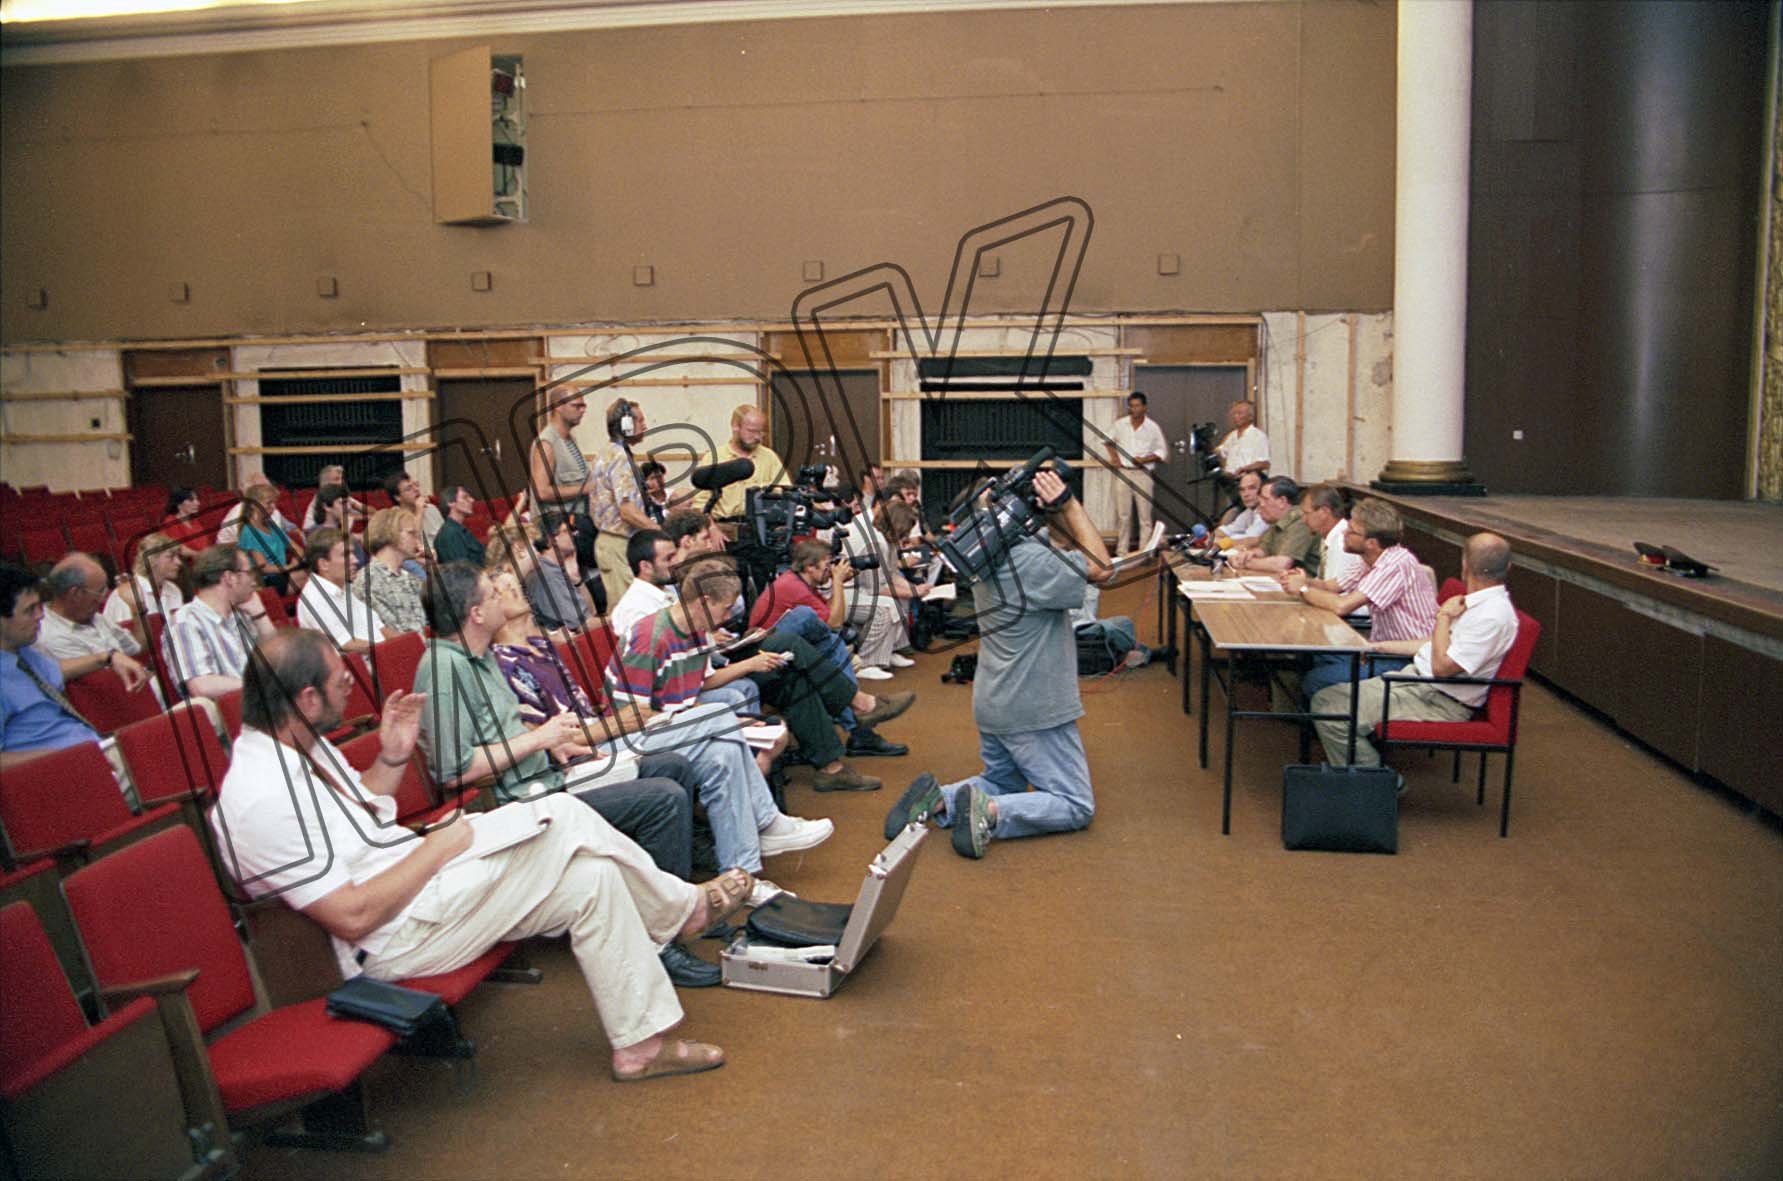 Fotografie: Pressekonferenz zum Abzug und Wohnungsbauprogramm, Wünsdorf, 27. Juli 1994 (Museum Berlin-Karlshorst RR-P)